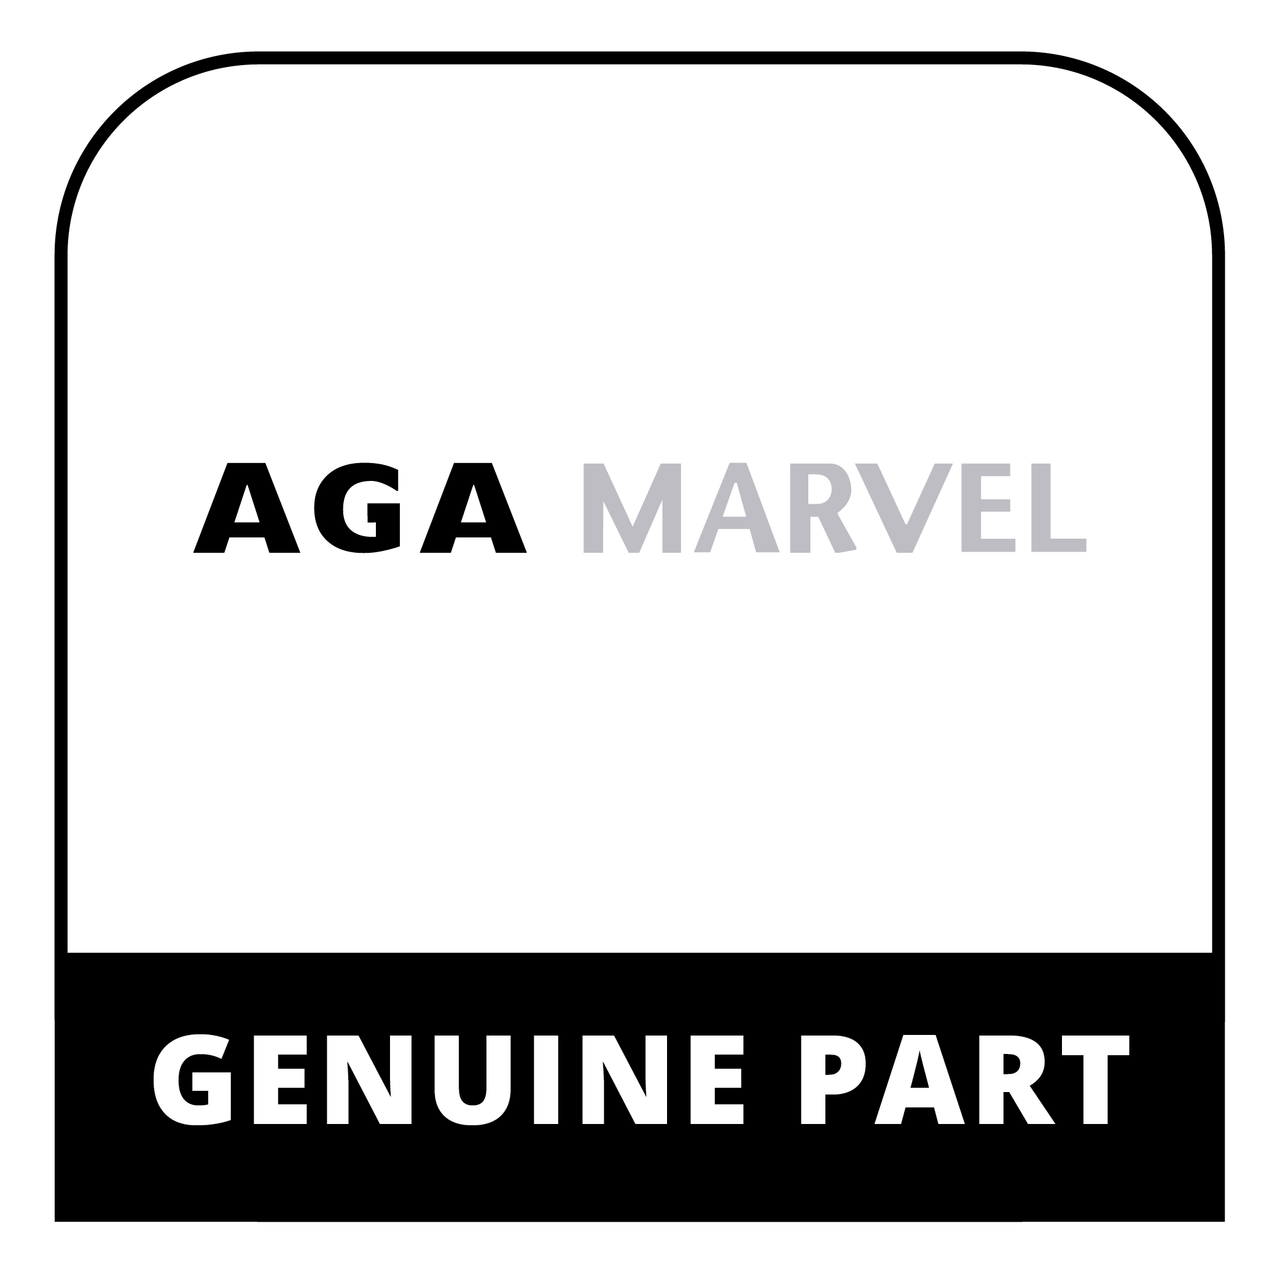 AGA Marvel R1081 - Cement Purimachos 1Lb Tin Aga - Genuine AGA Marvel Part